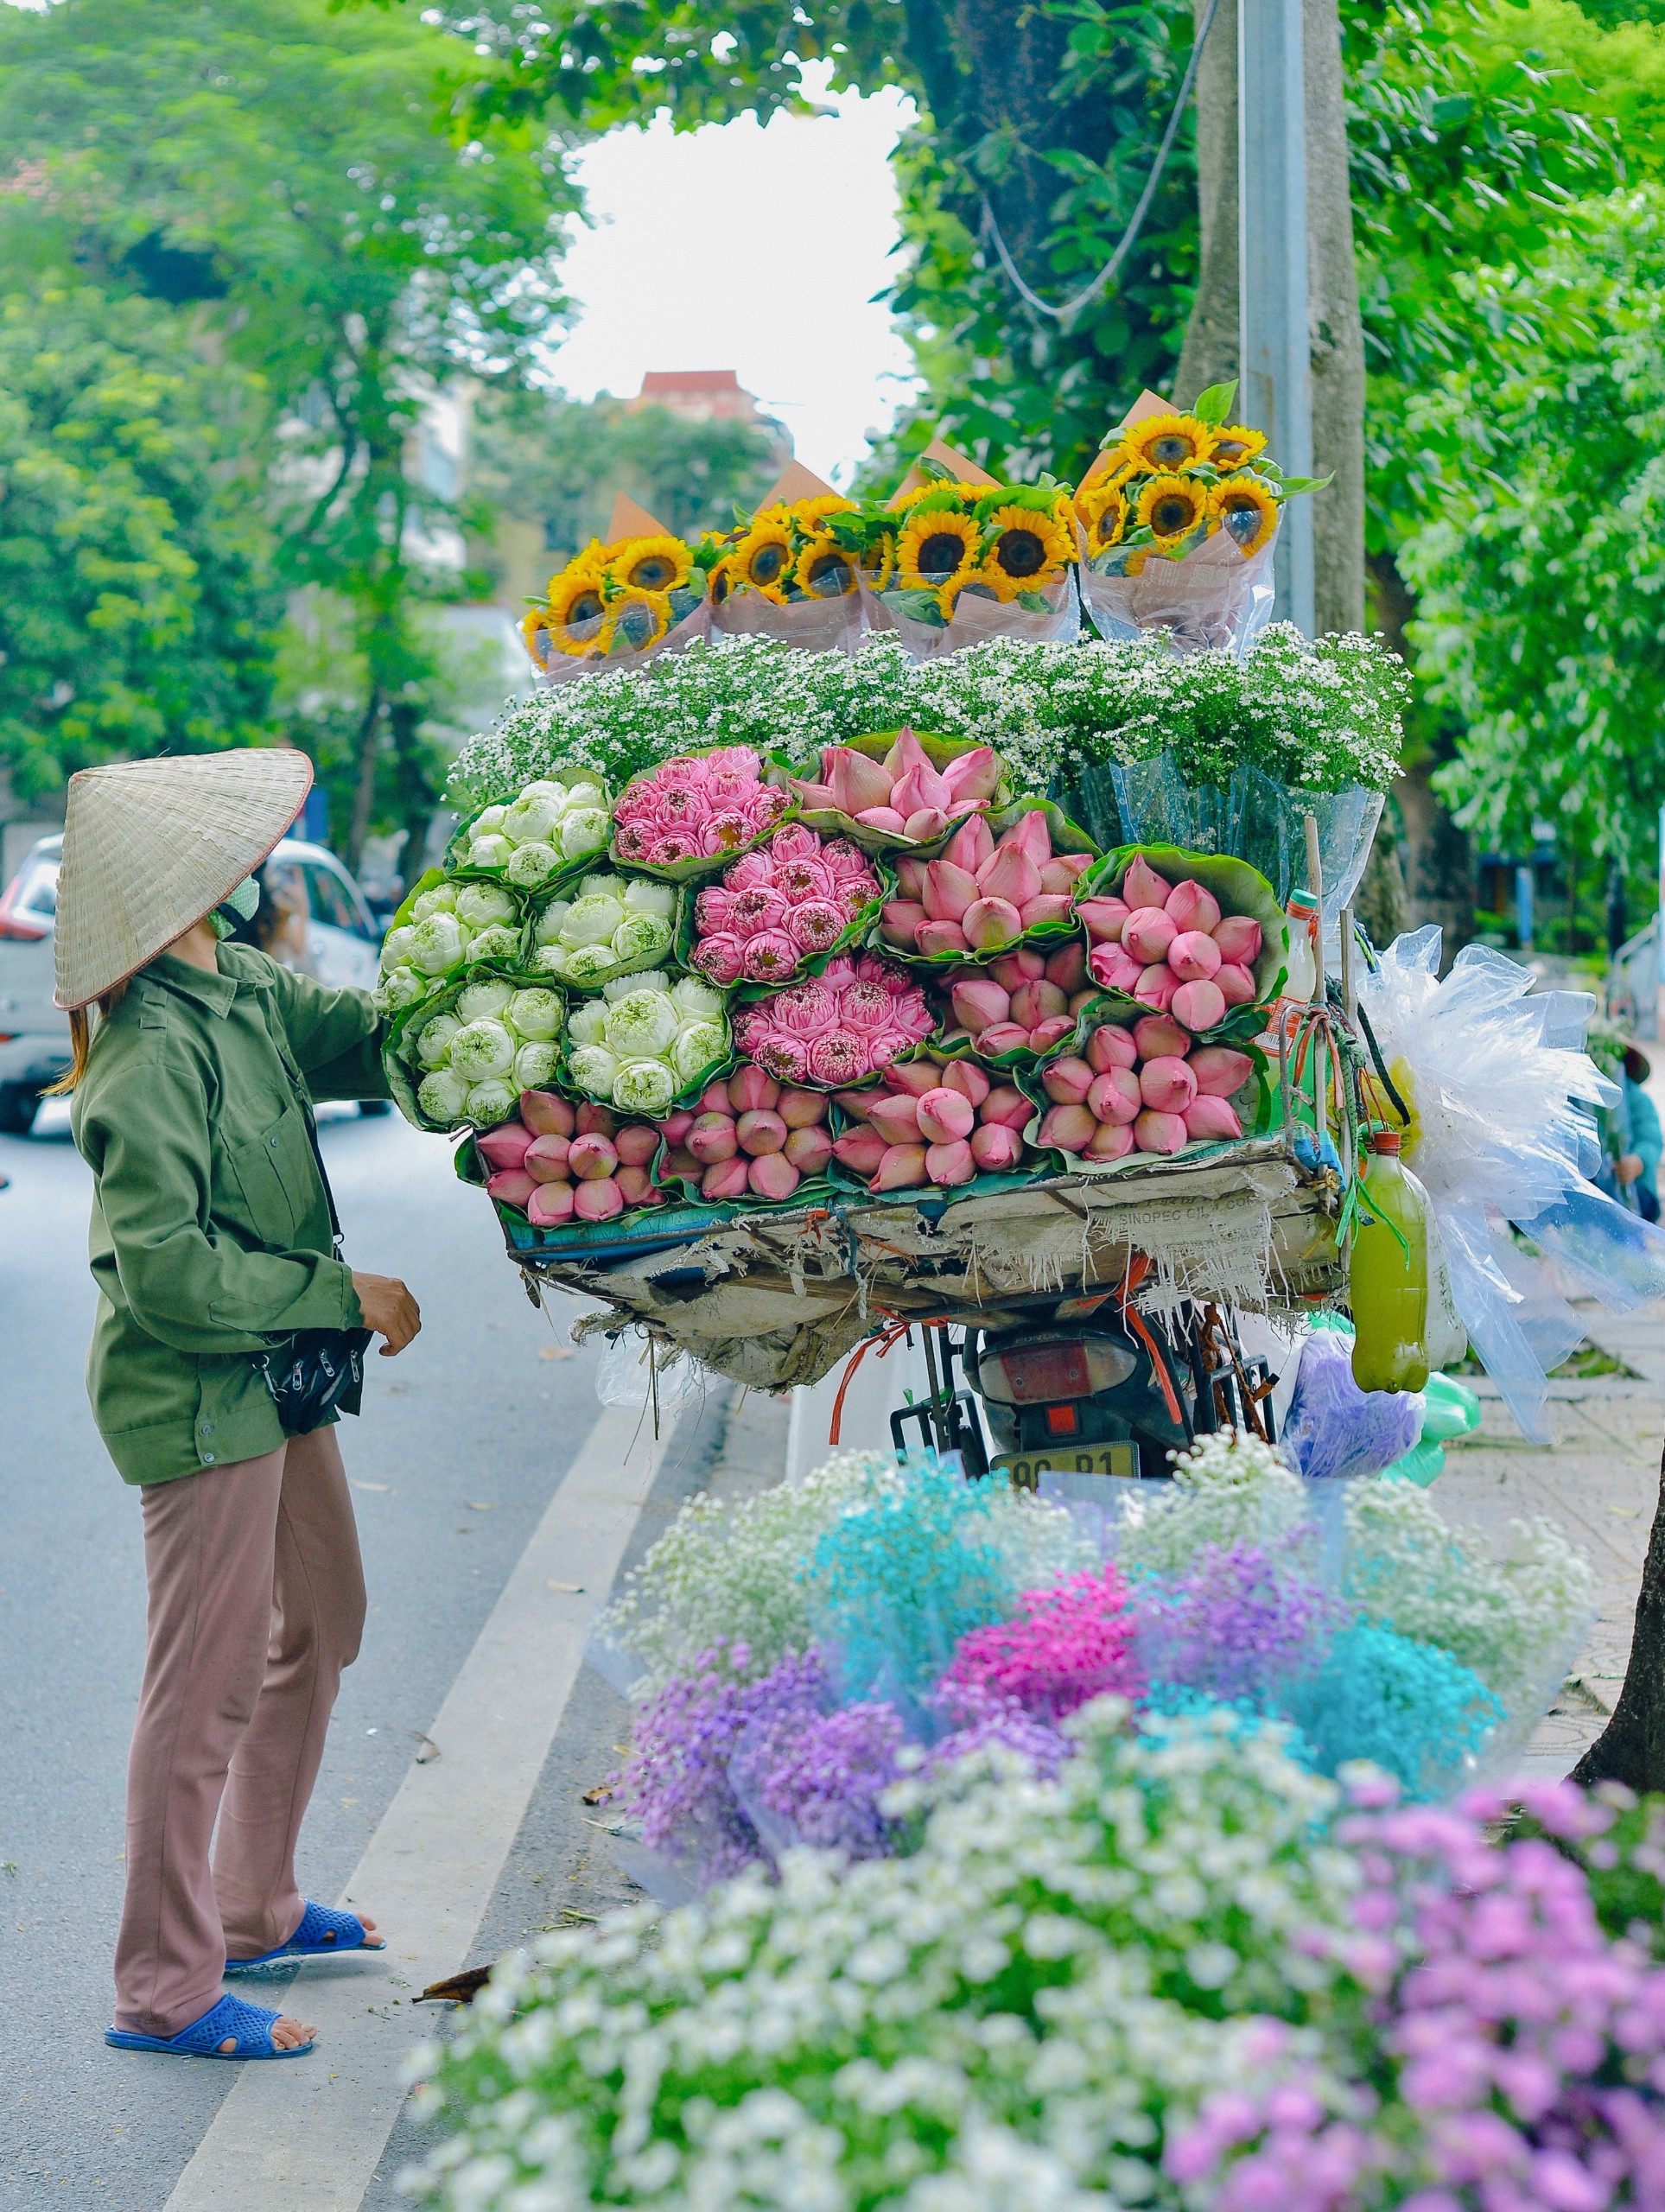 Xe hàng hoa Hà Nội luôn là một trong những biểu tượng đặc trưng của thủ đô nước ta. Hãy cùng ngắm nhìn những hình ảnh về xe hàng hoa Hà Nội để khám phá văn hóa, phong cách sống của người dân địa phương.